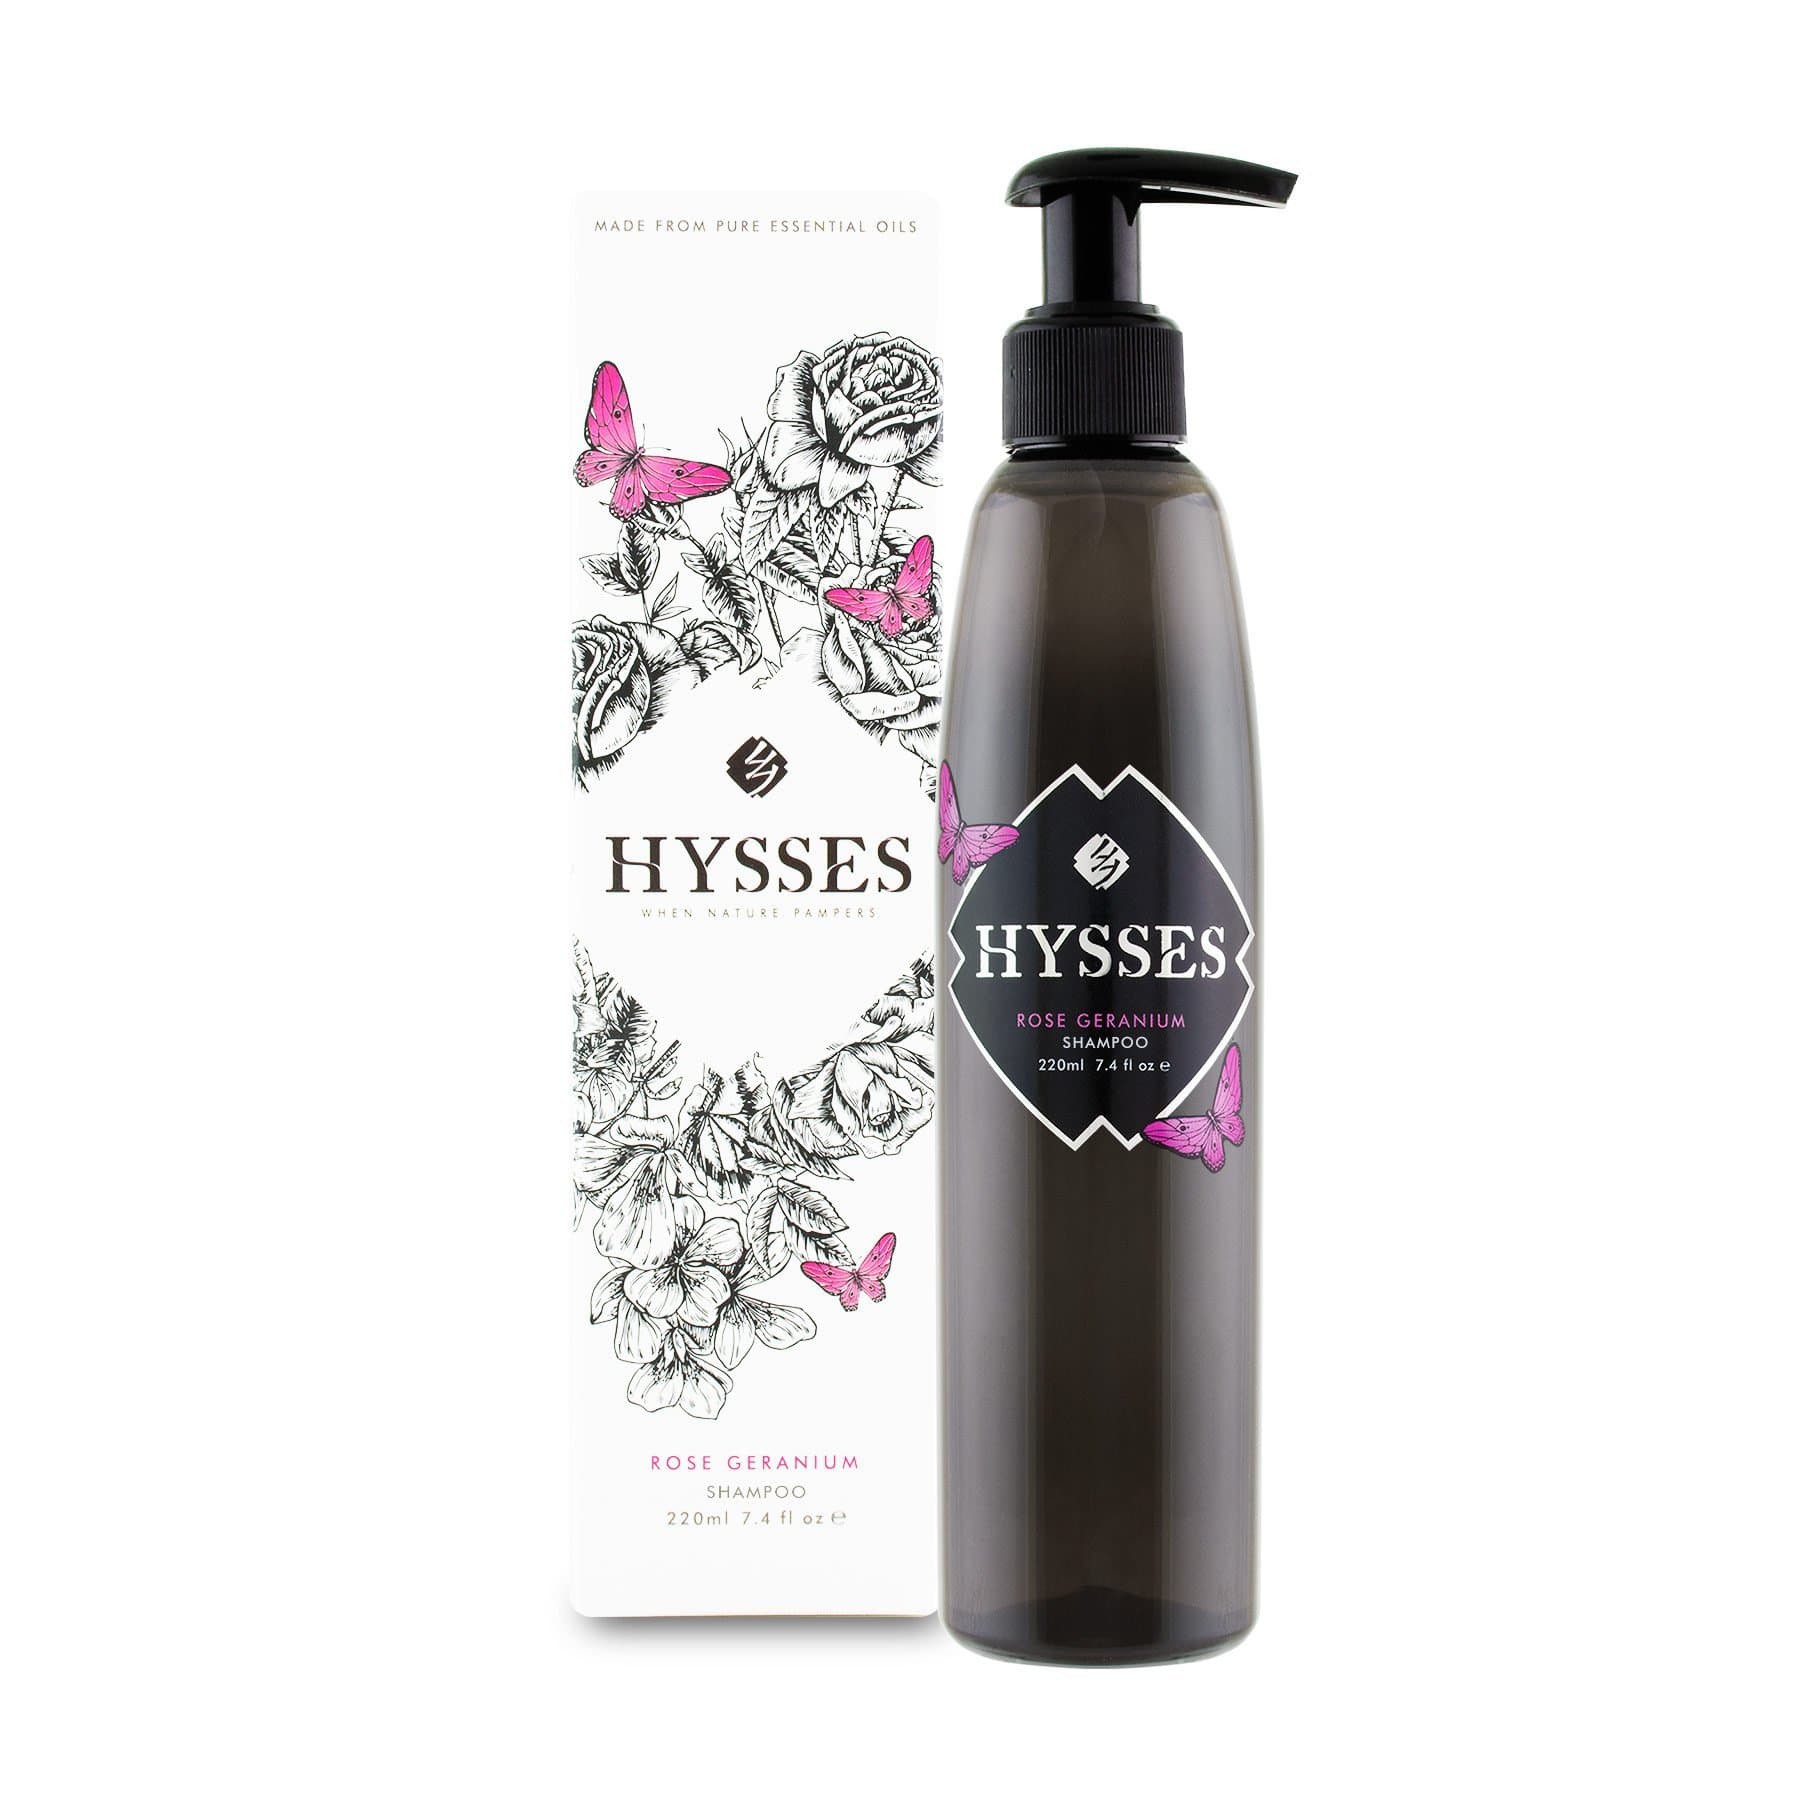 Hysses Hair Care Shampoo Rose Geranium, 220ml